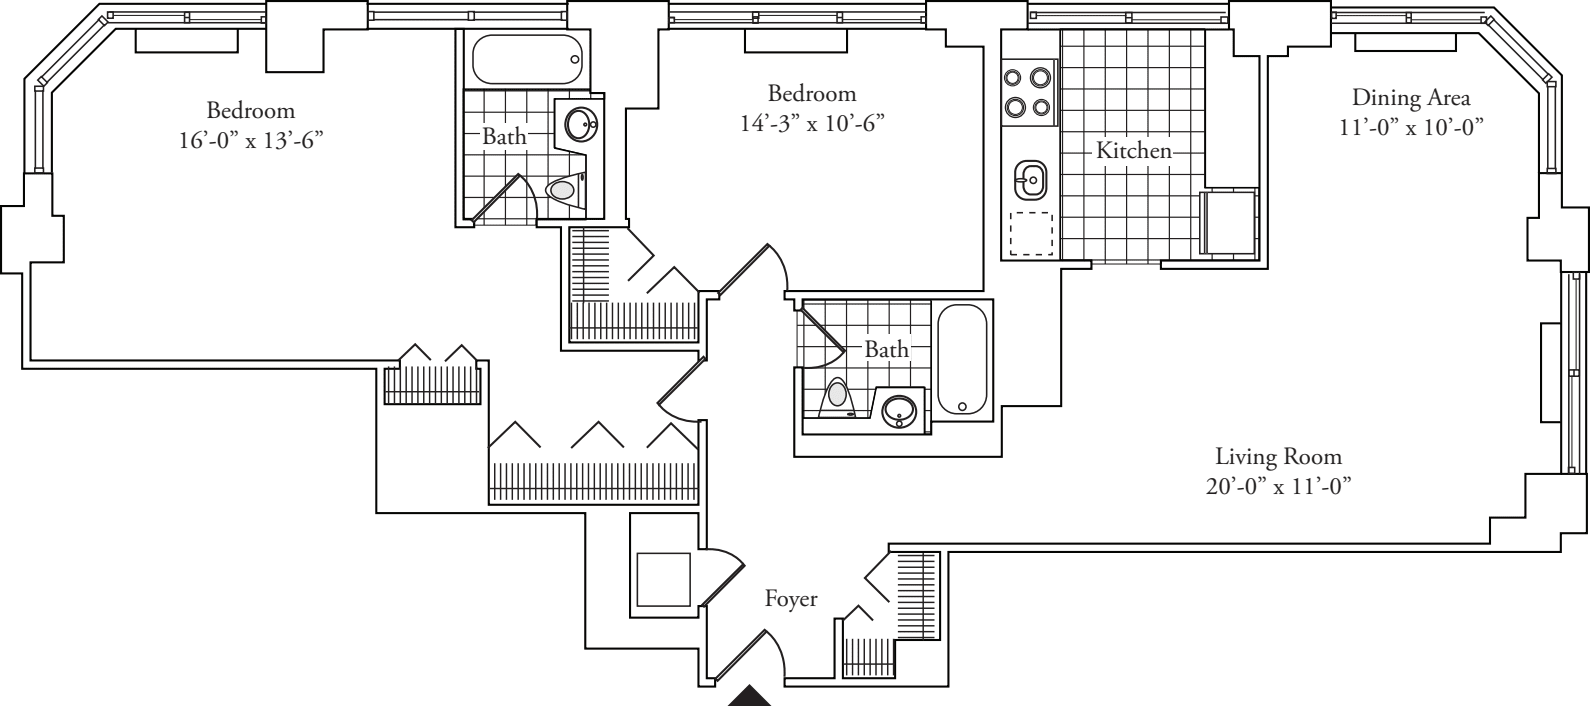 Residence D, floors 37-P2